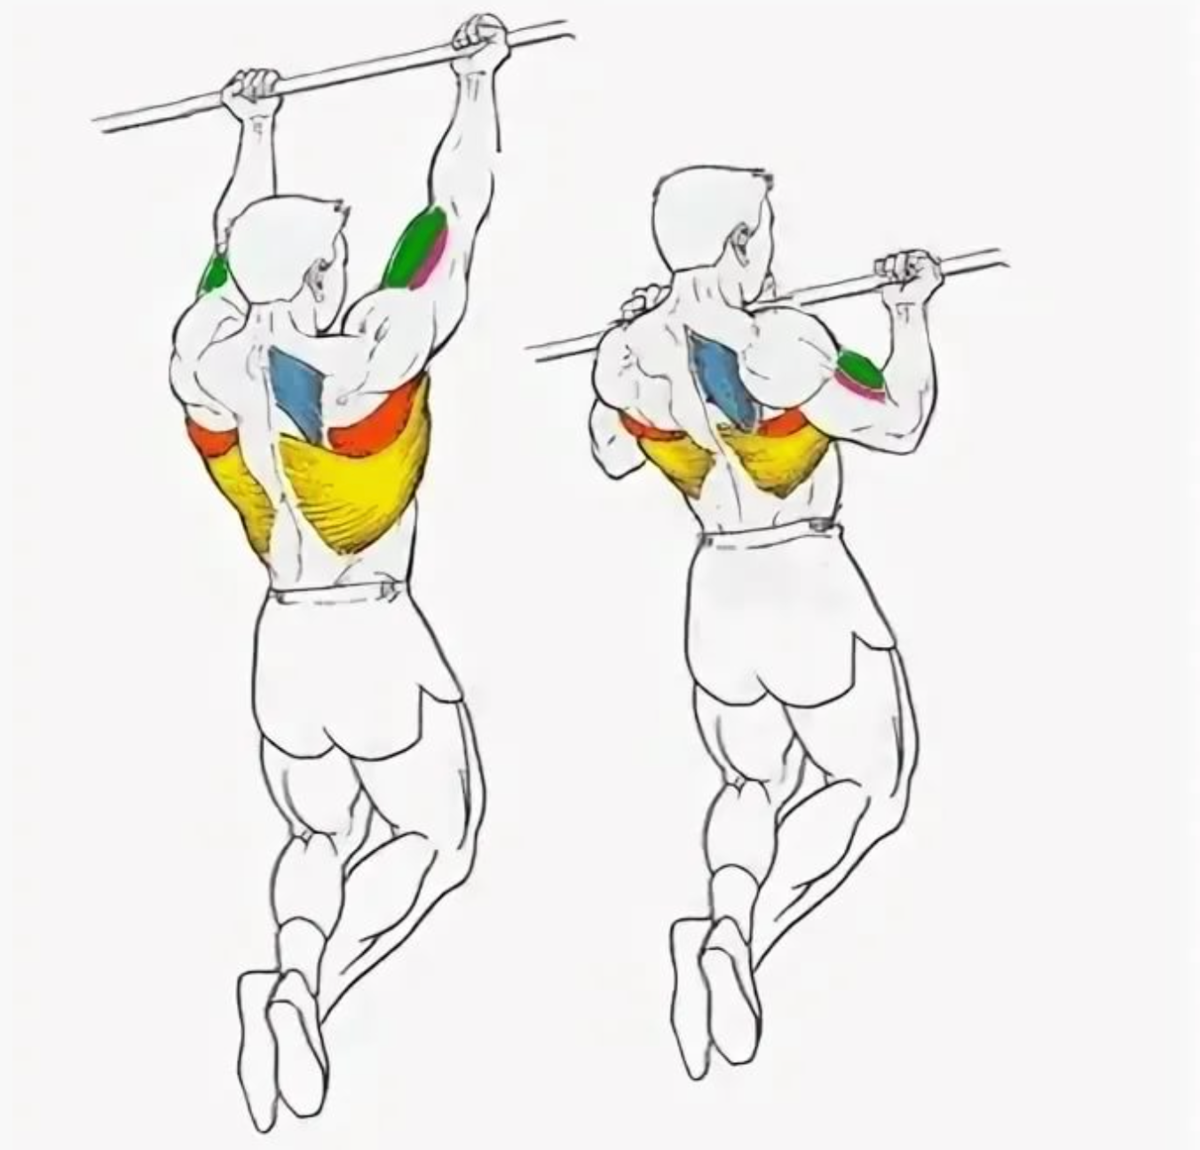 Какие мышцы работают при подтягивании в различных техниках на турнике или перекладине